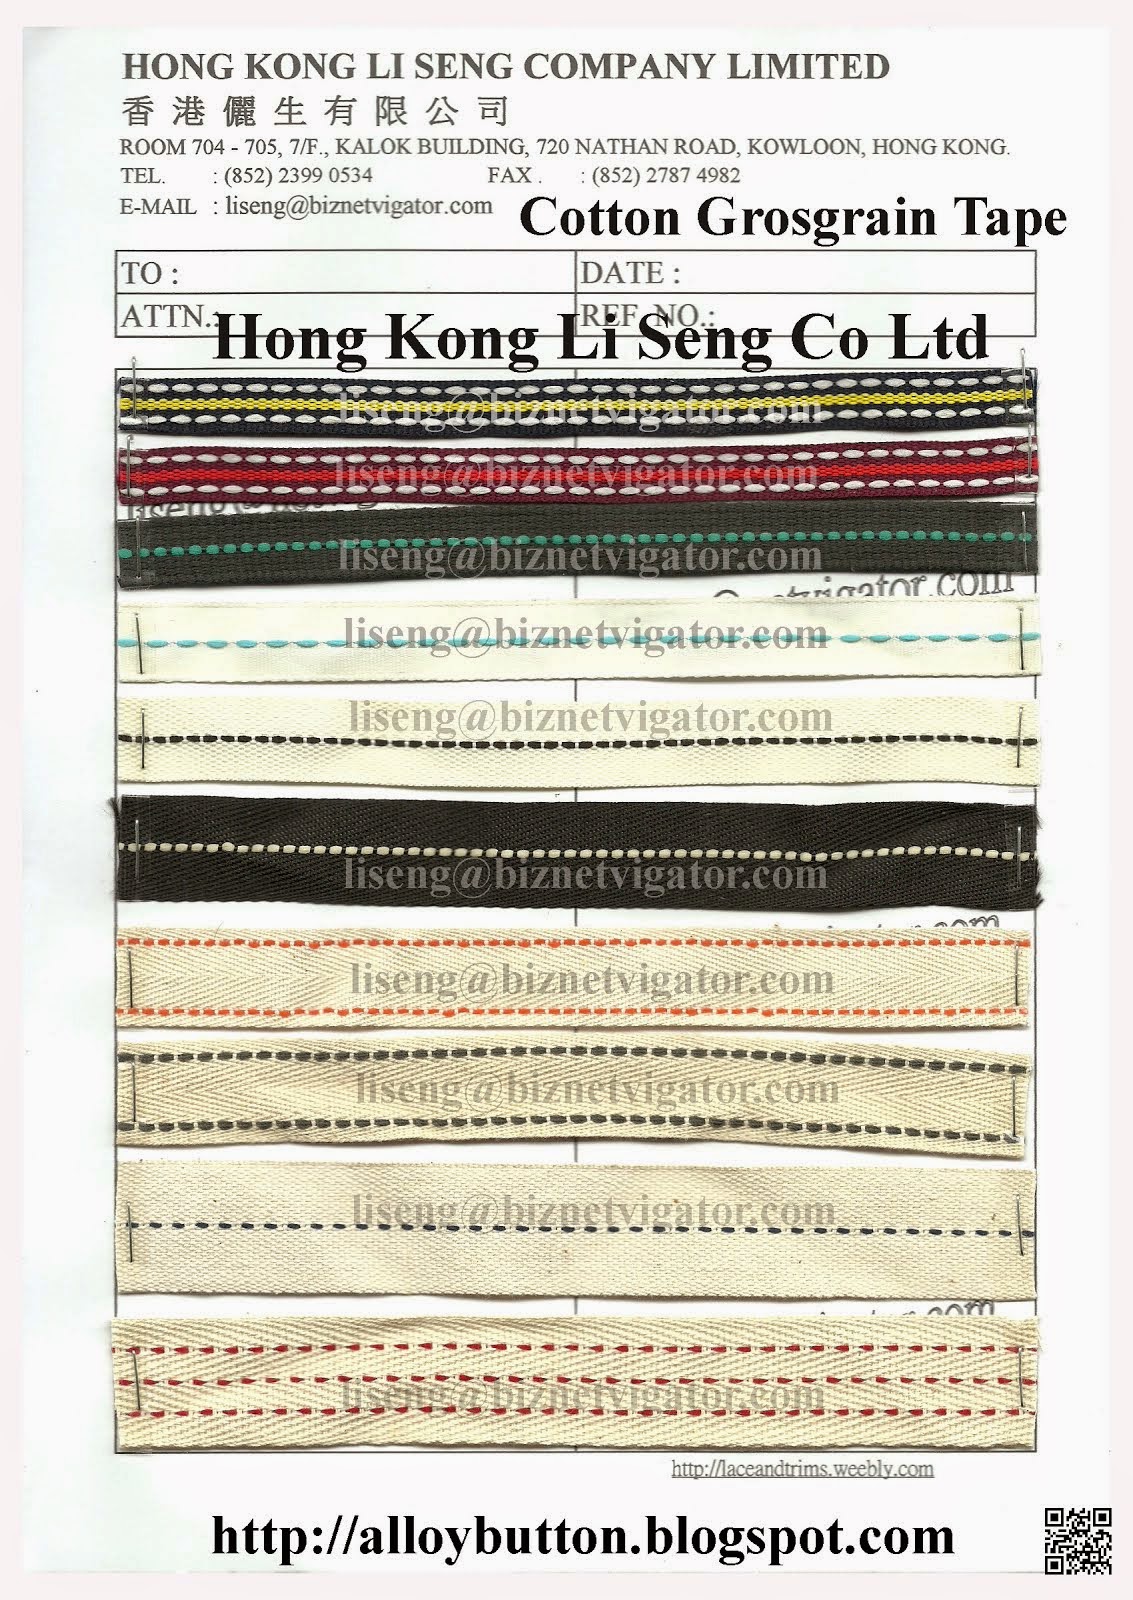 Cotton Grosgrain Tape Manufacturer Wholesaler Supplier - Hong Kong Li Seng Co Ltd